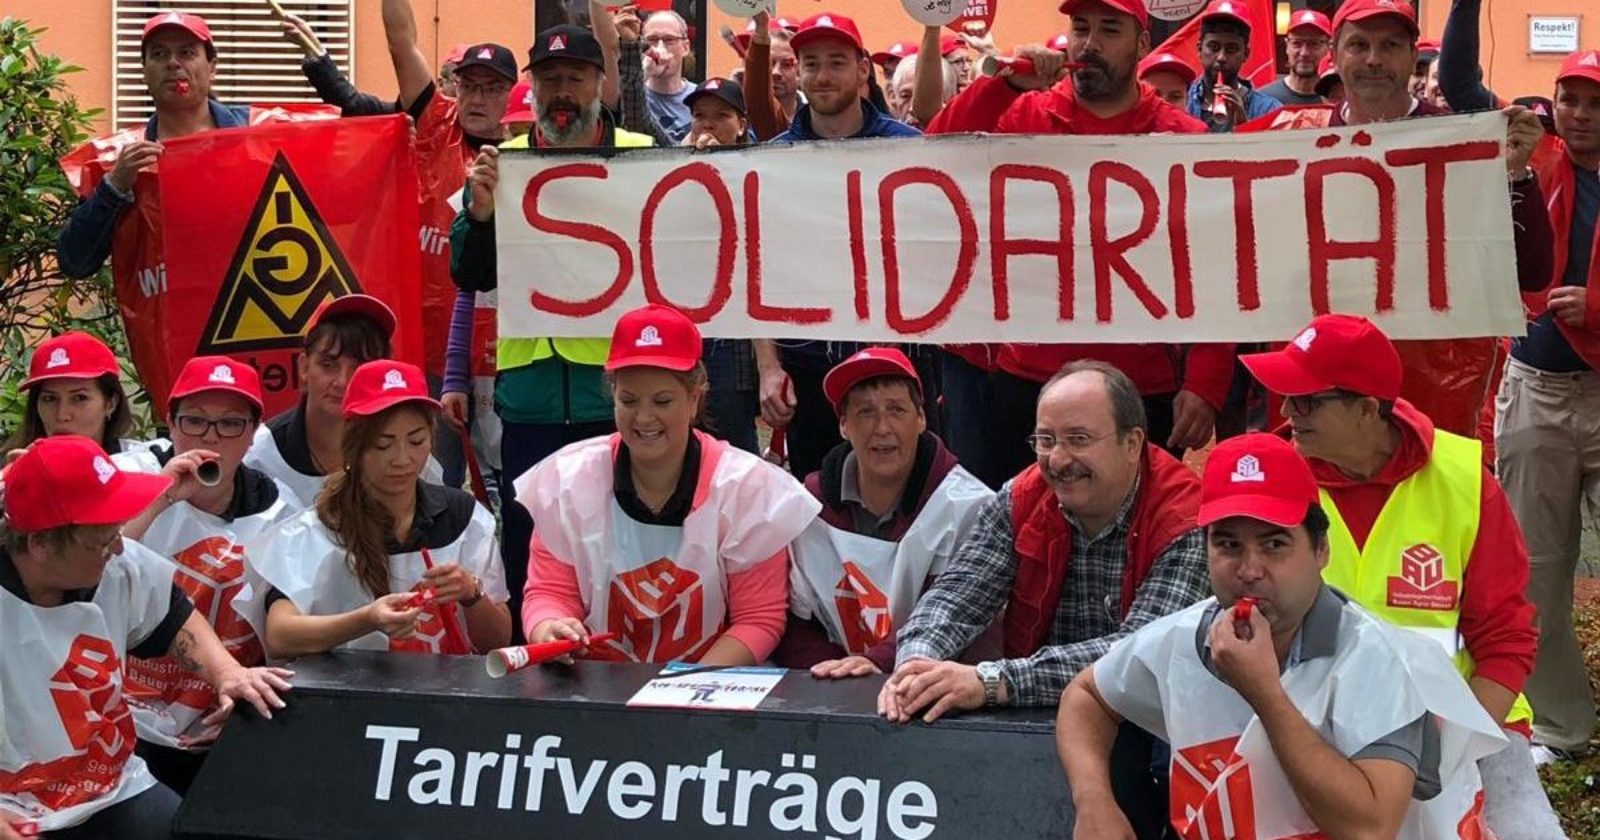 Kolleginnen von WISAG und Weisbender streiken in Beverungen – Kunde und Gäste solidarisch